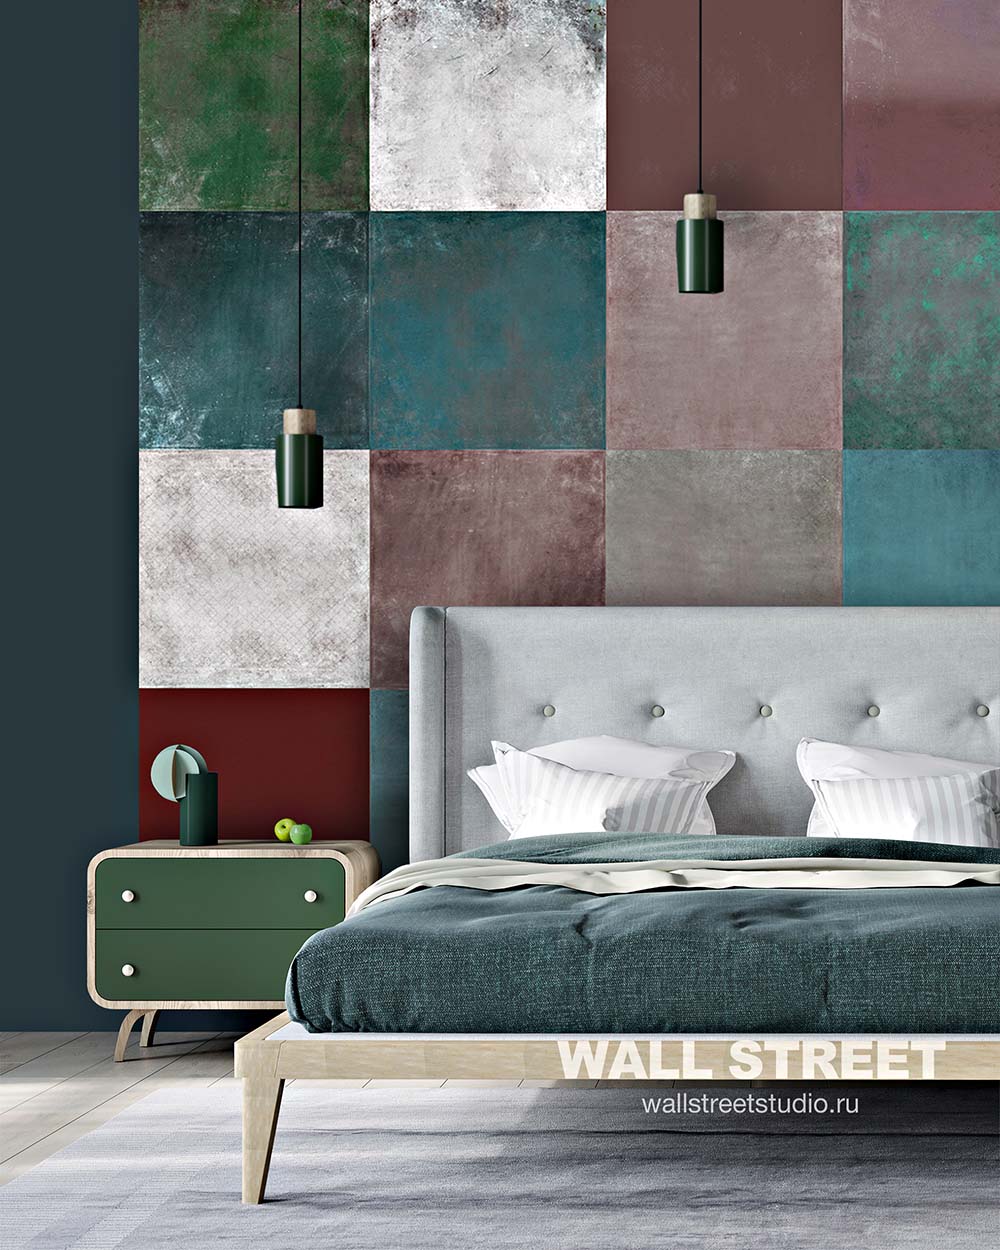 Trang trí phòng ngủ với giấy dán tường họa tiết colour block